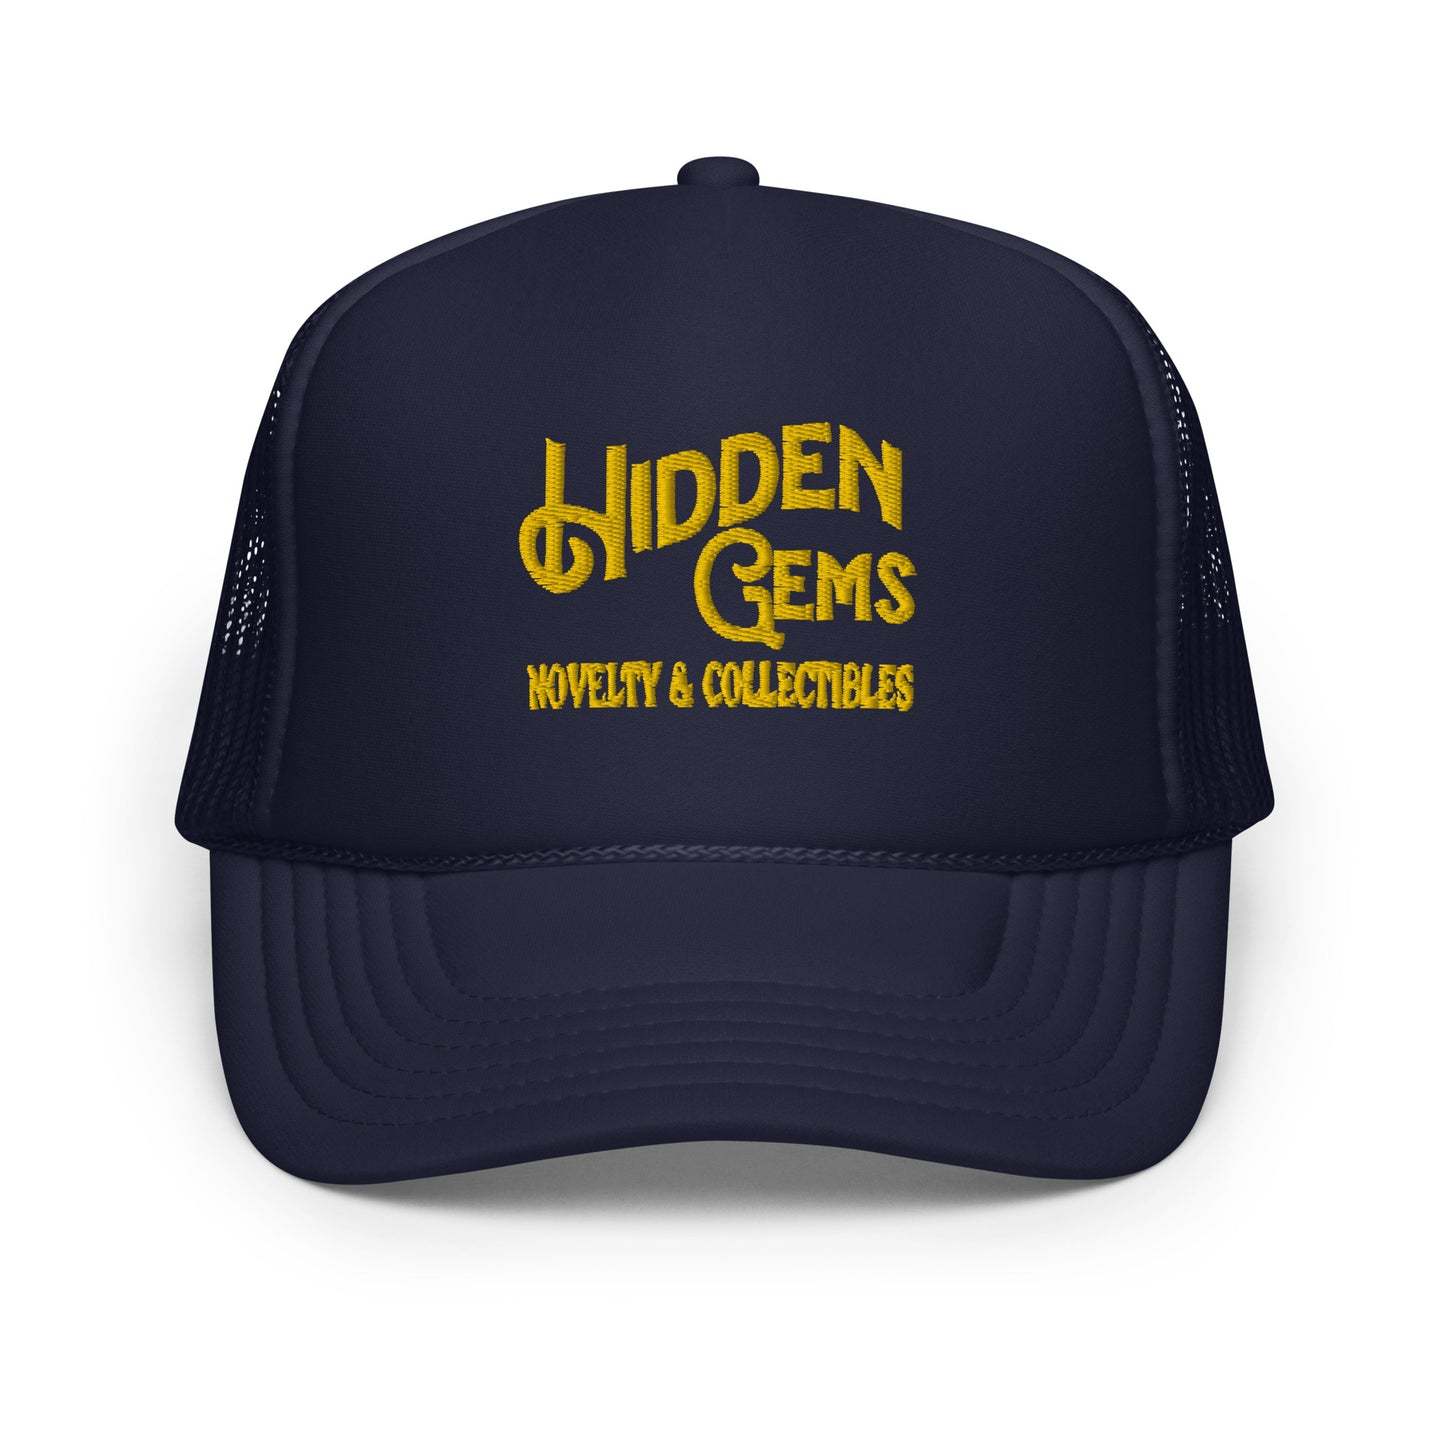 Hidden Gems Novelty & Collectibles Foam Trucker Hat